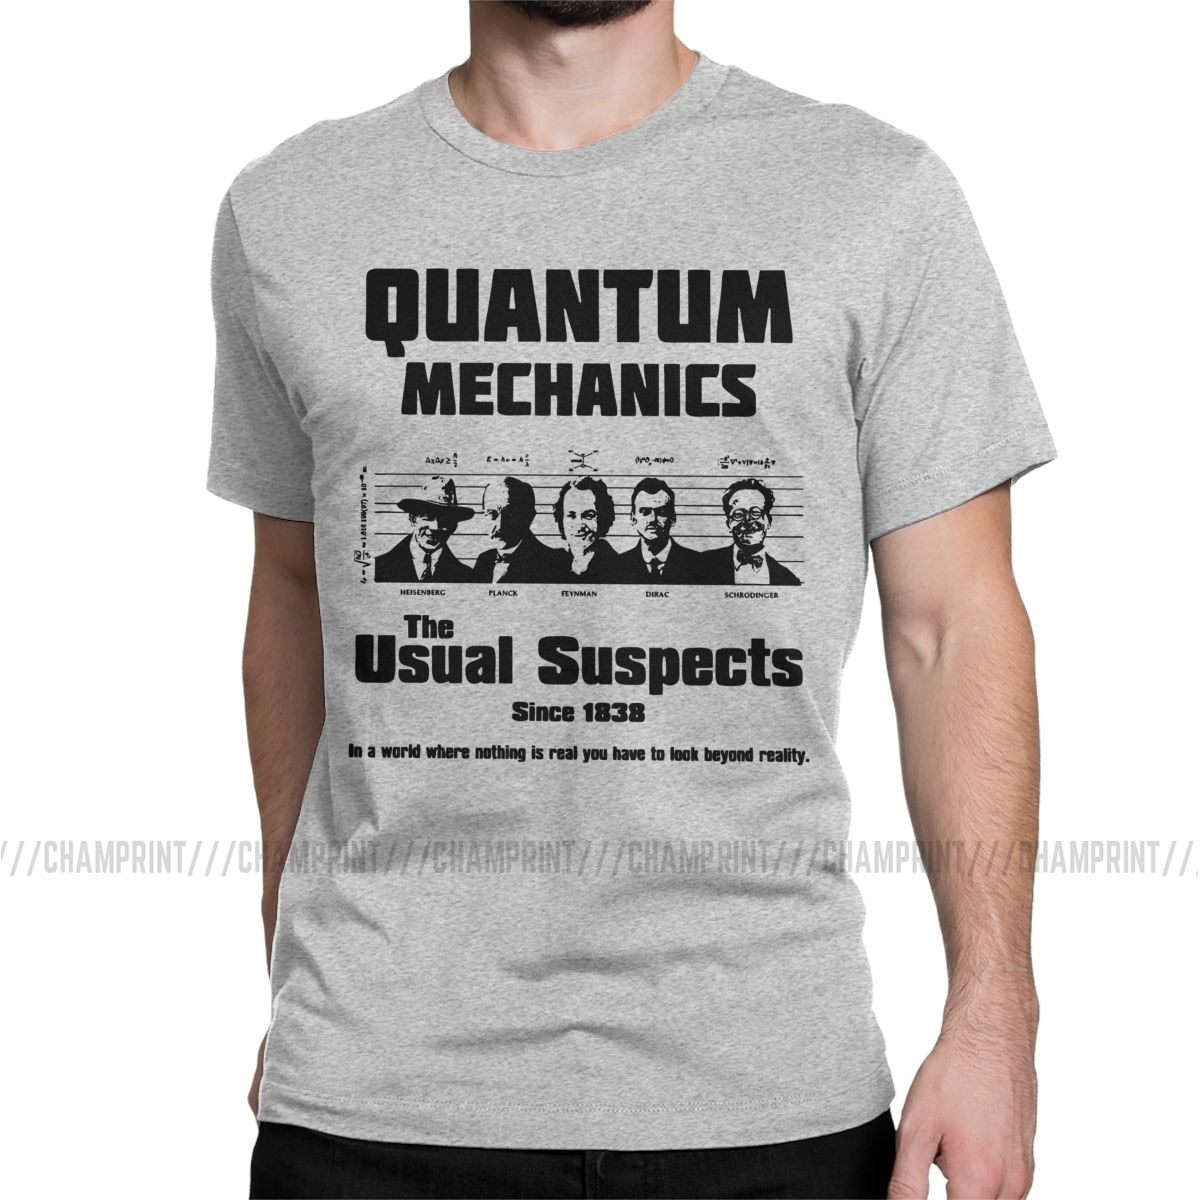 Grey "The Usual Suspects" Quantum Mechanics T-Shirt